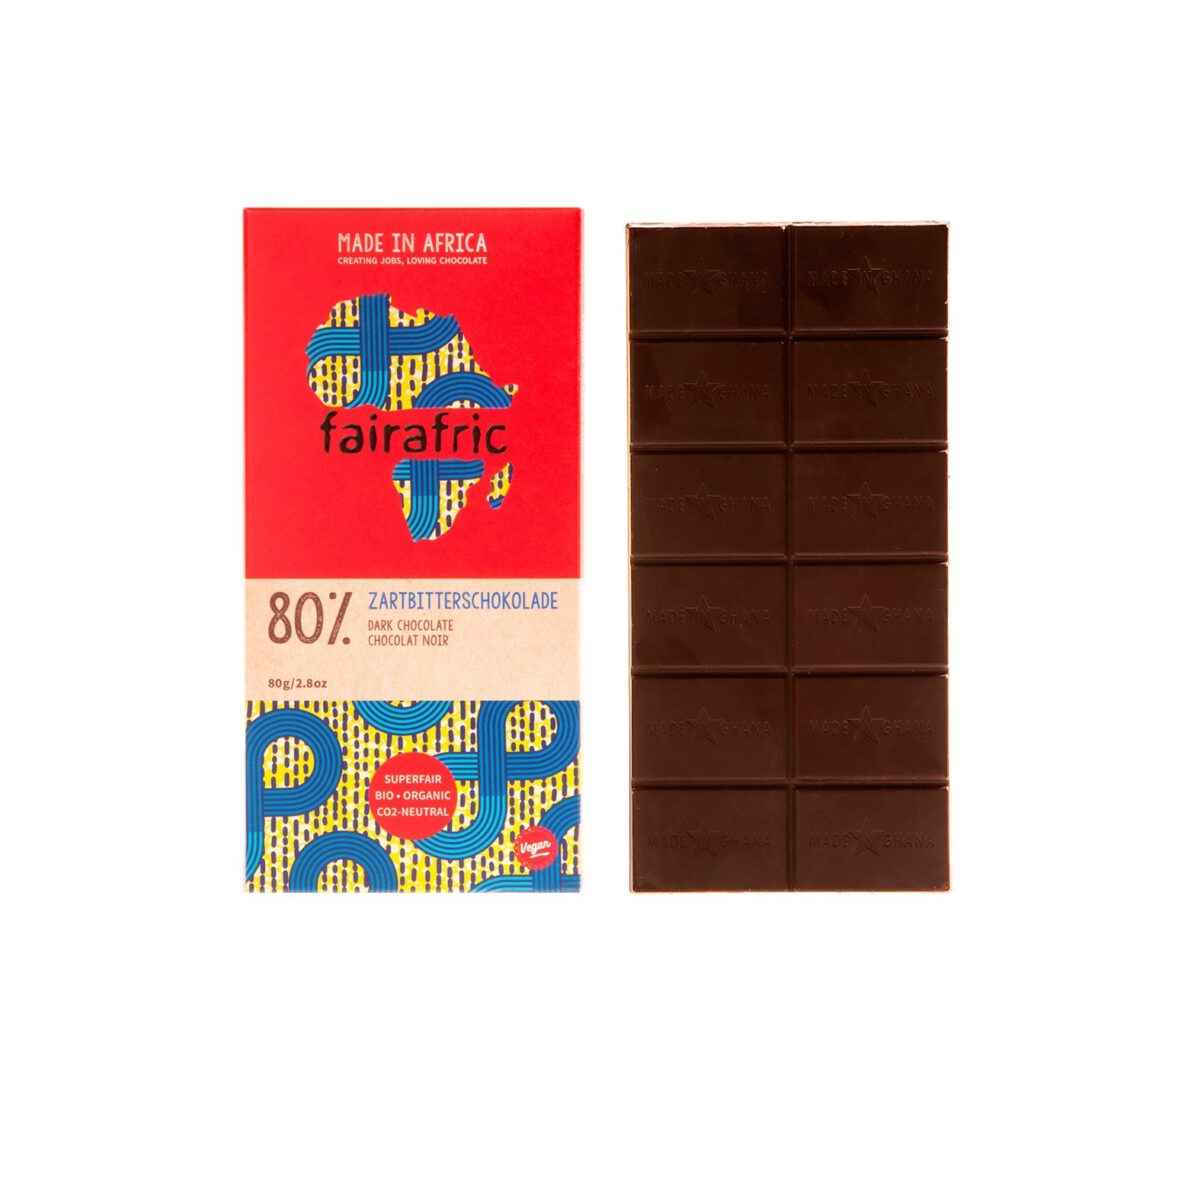 Bio_chocolade_80%_Fairafric